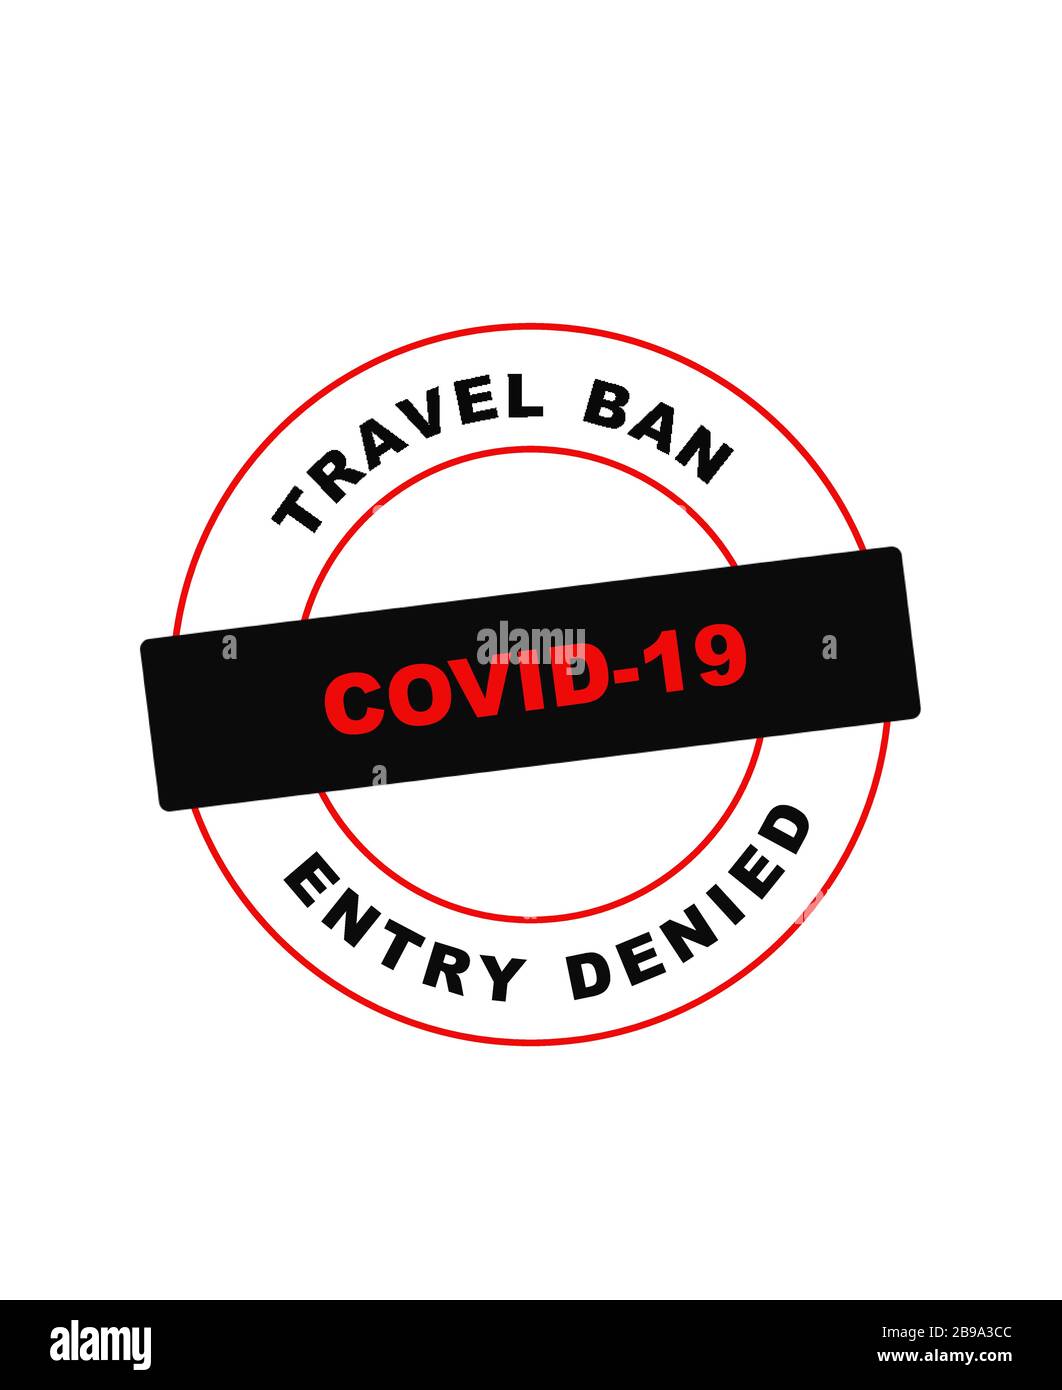 Immagine vettoriale relativa a Travel Ban & Controlling the Coronavirus Pandemic 2020 Illustrazione Vettoriale